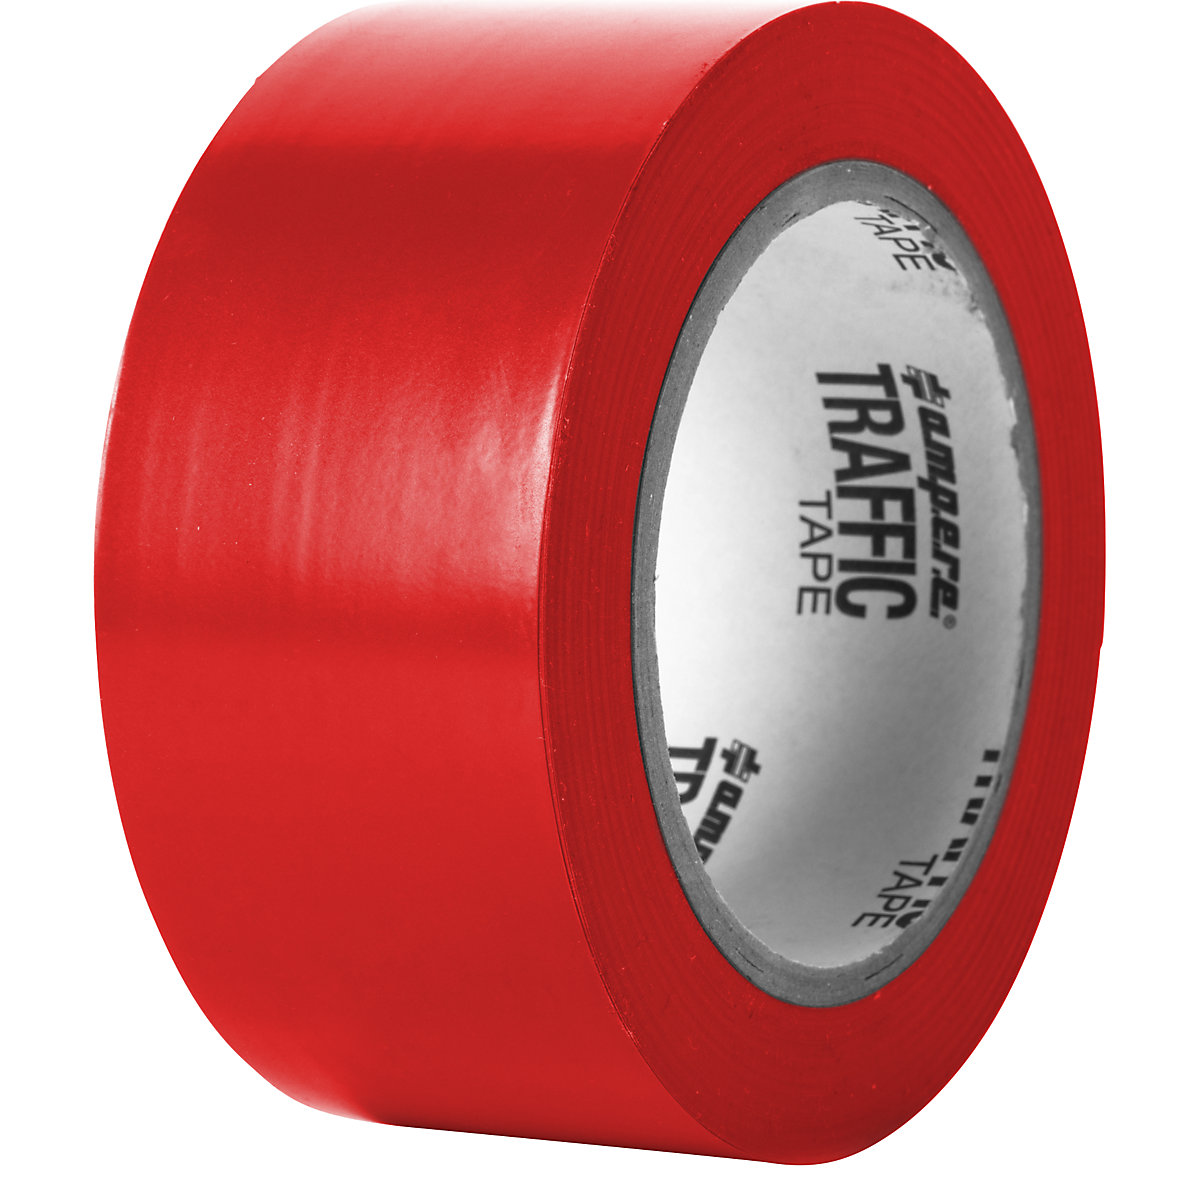 Podlahová označovacia páska – Ampere, šírka 50 mm, červená-5